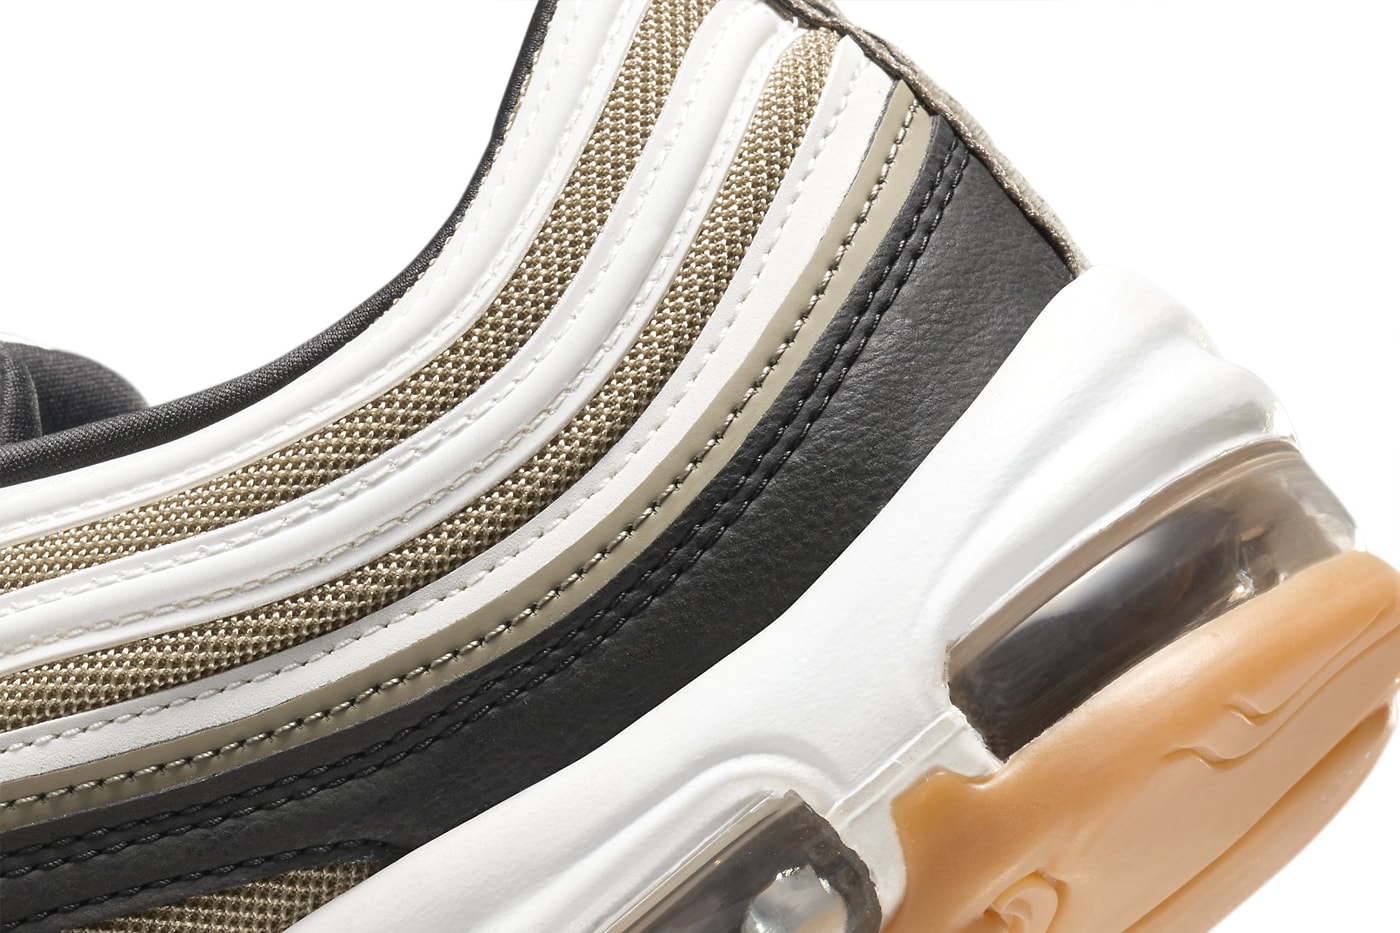 ナイキエアマックス97から春夏らしい新色 “ライトオリーブ”が登場 Official Look At the Nike Air Max 97 "Light Olive" 921826-203 cactus jack neutral brown gum soles